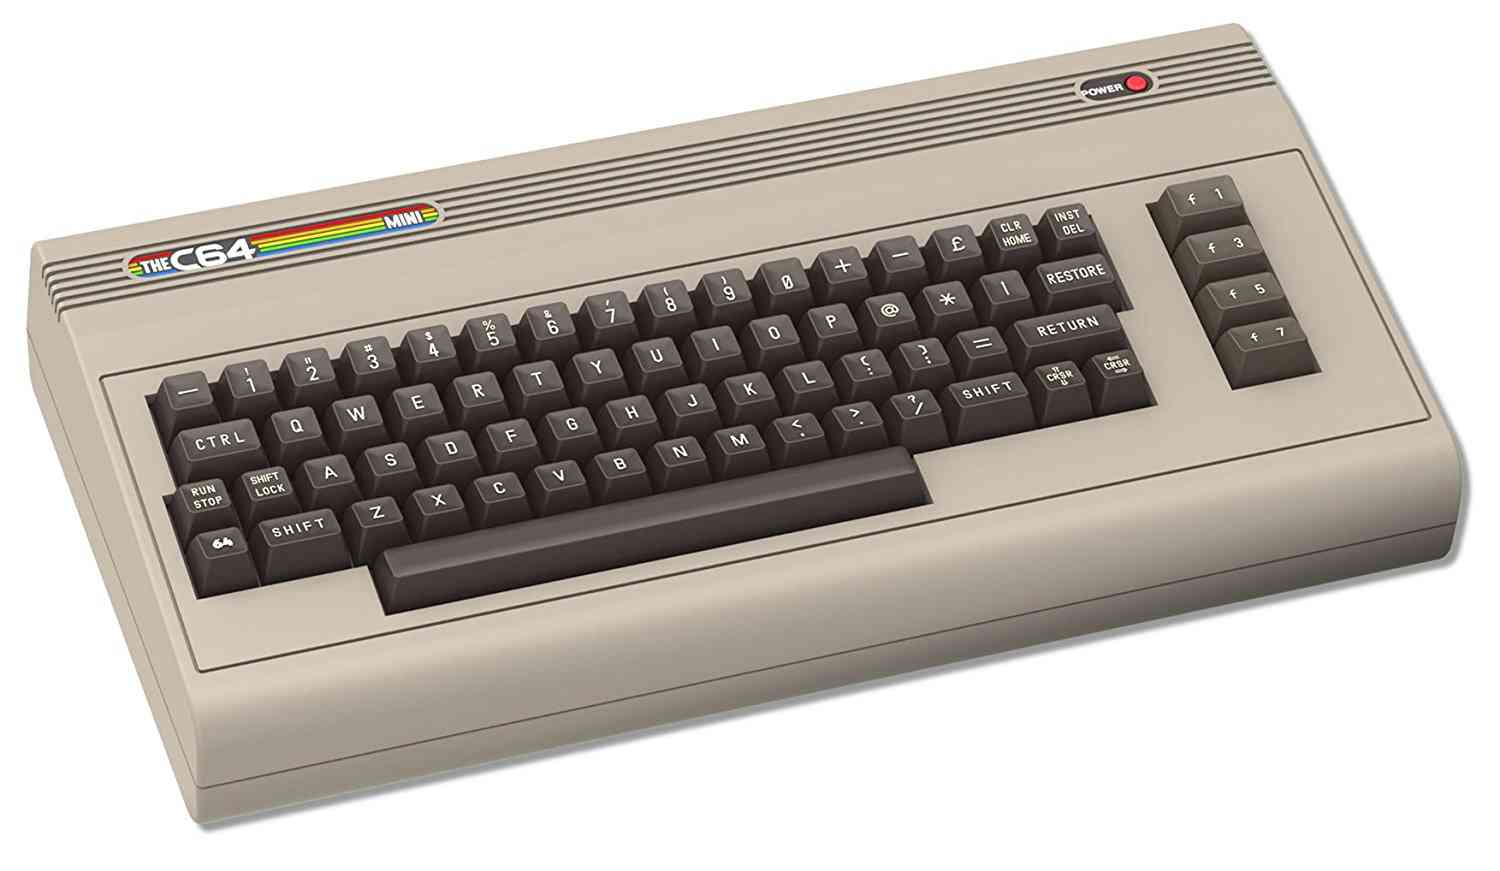 Commodore 64 games